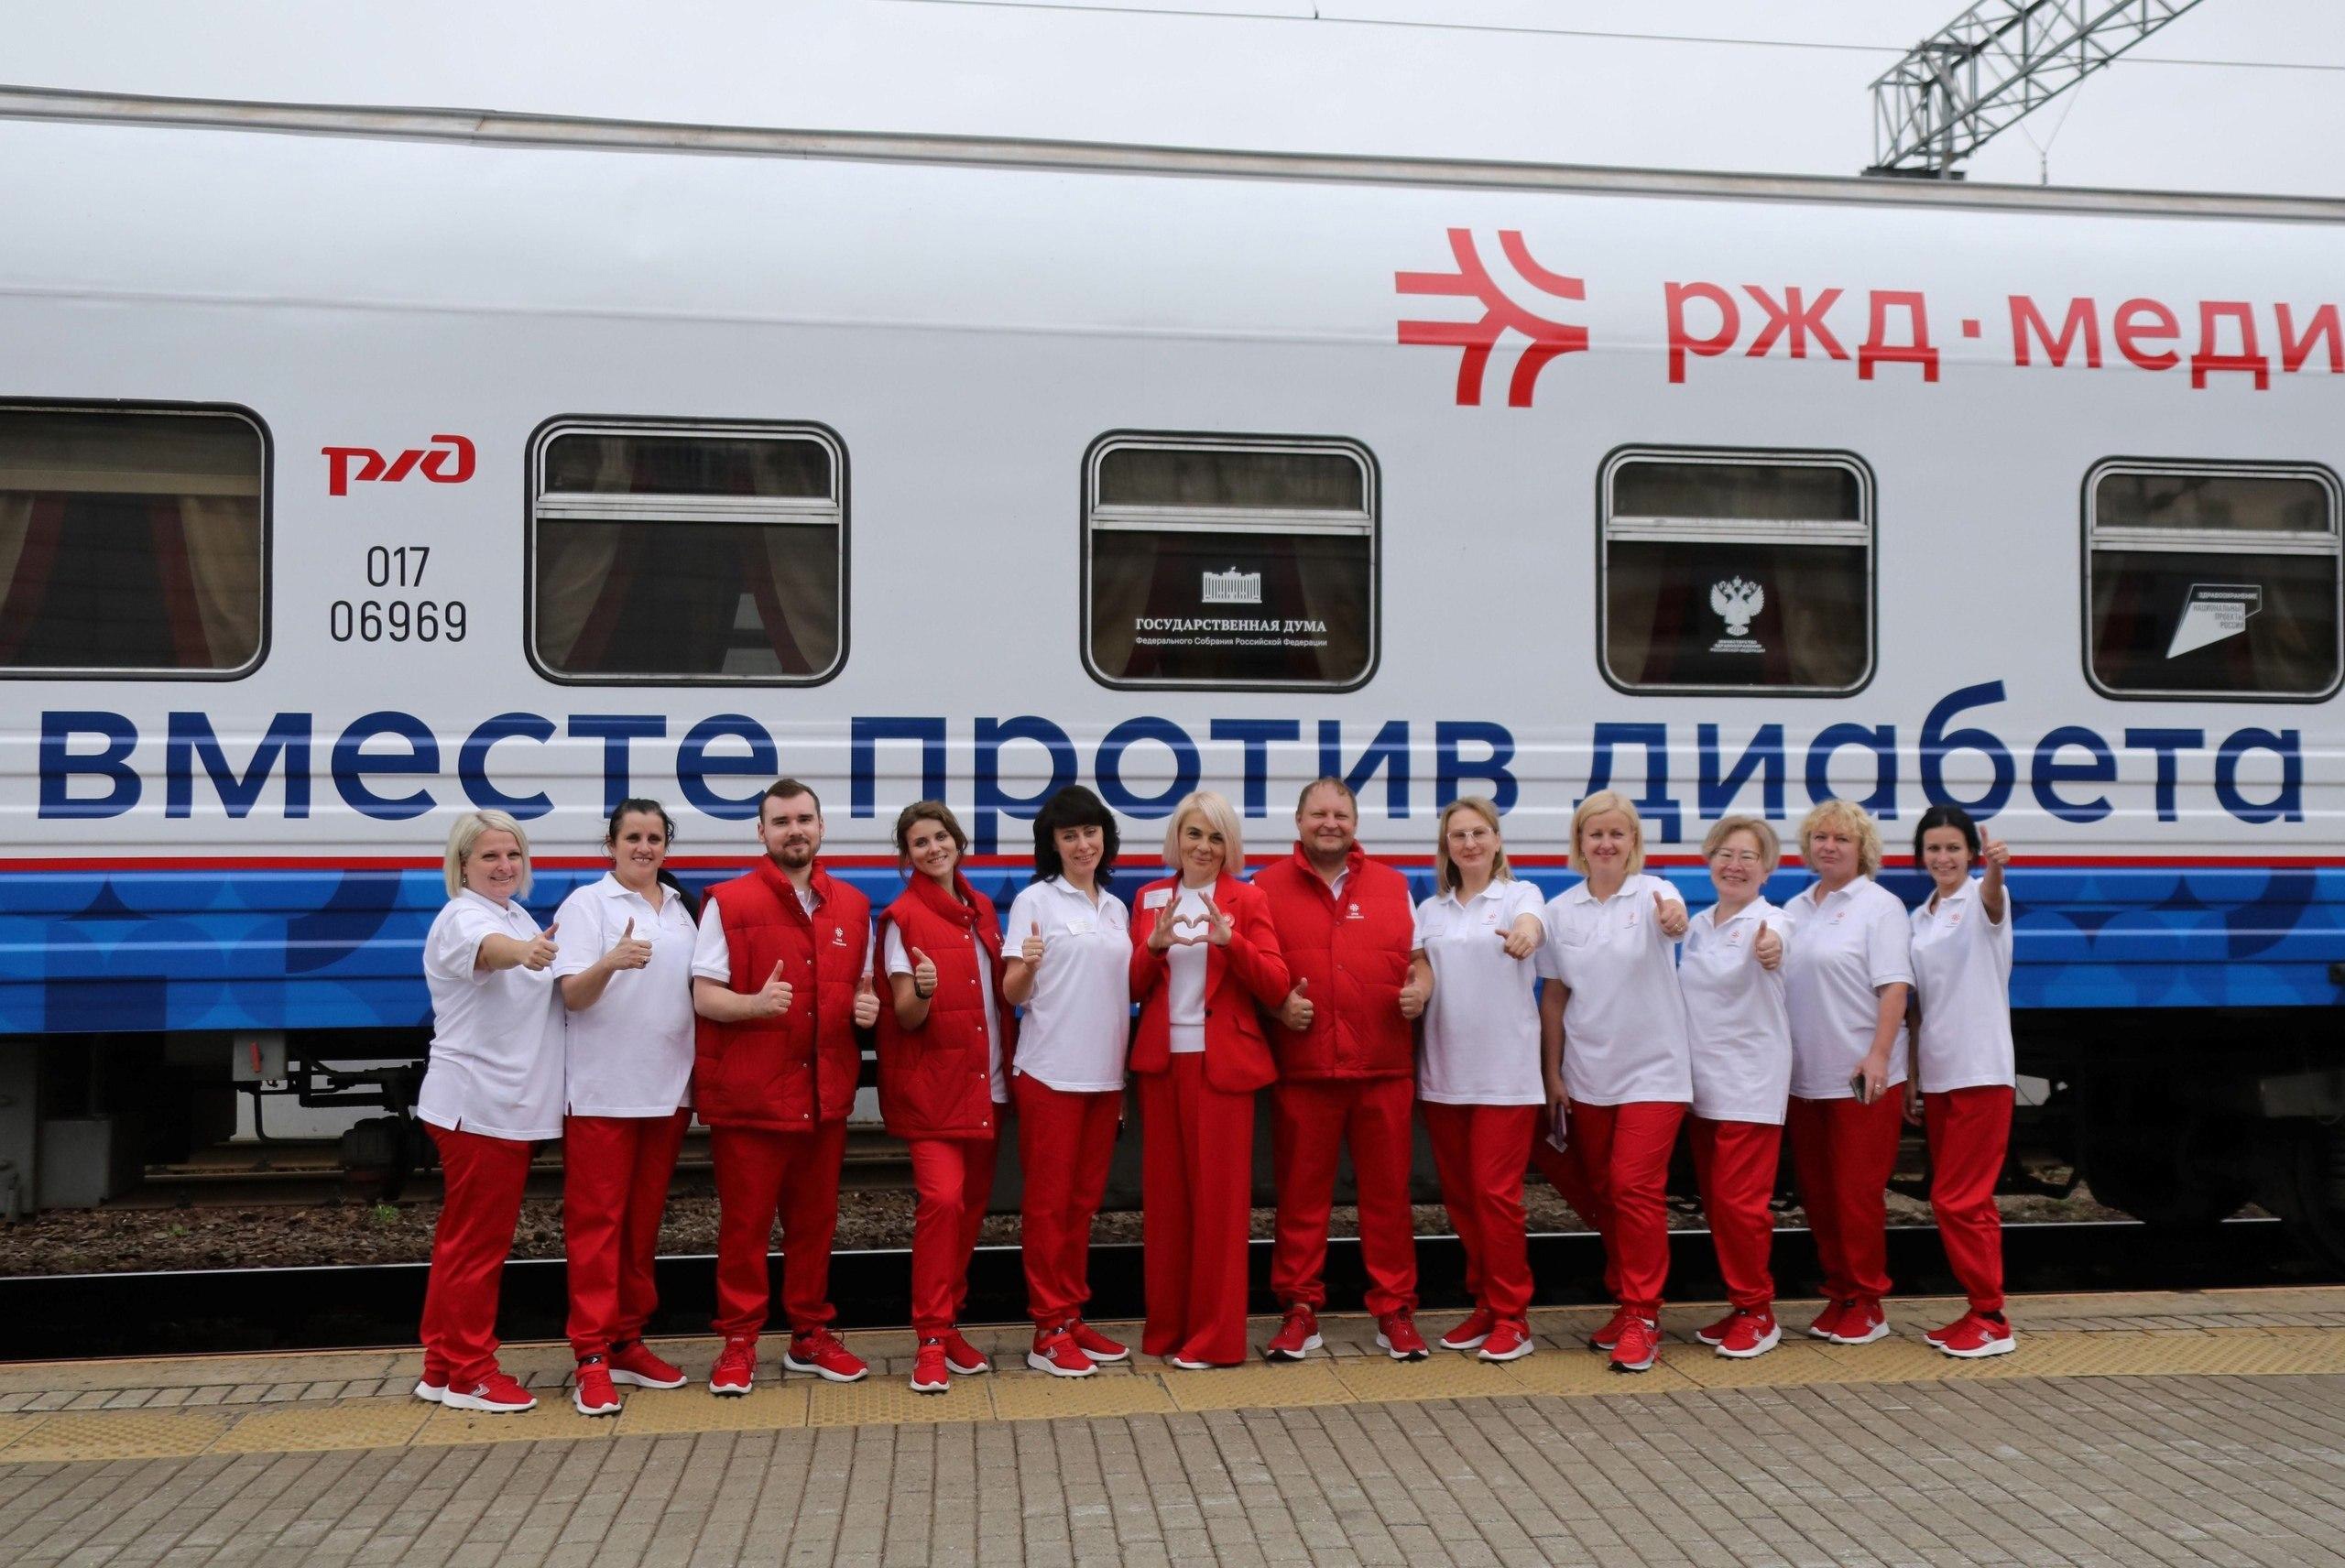 Нацпроект «Здравоохранение»: поезд здоровья обследует граждан  от Владивостока до Москвы.